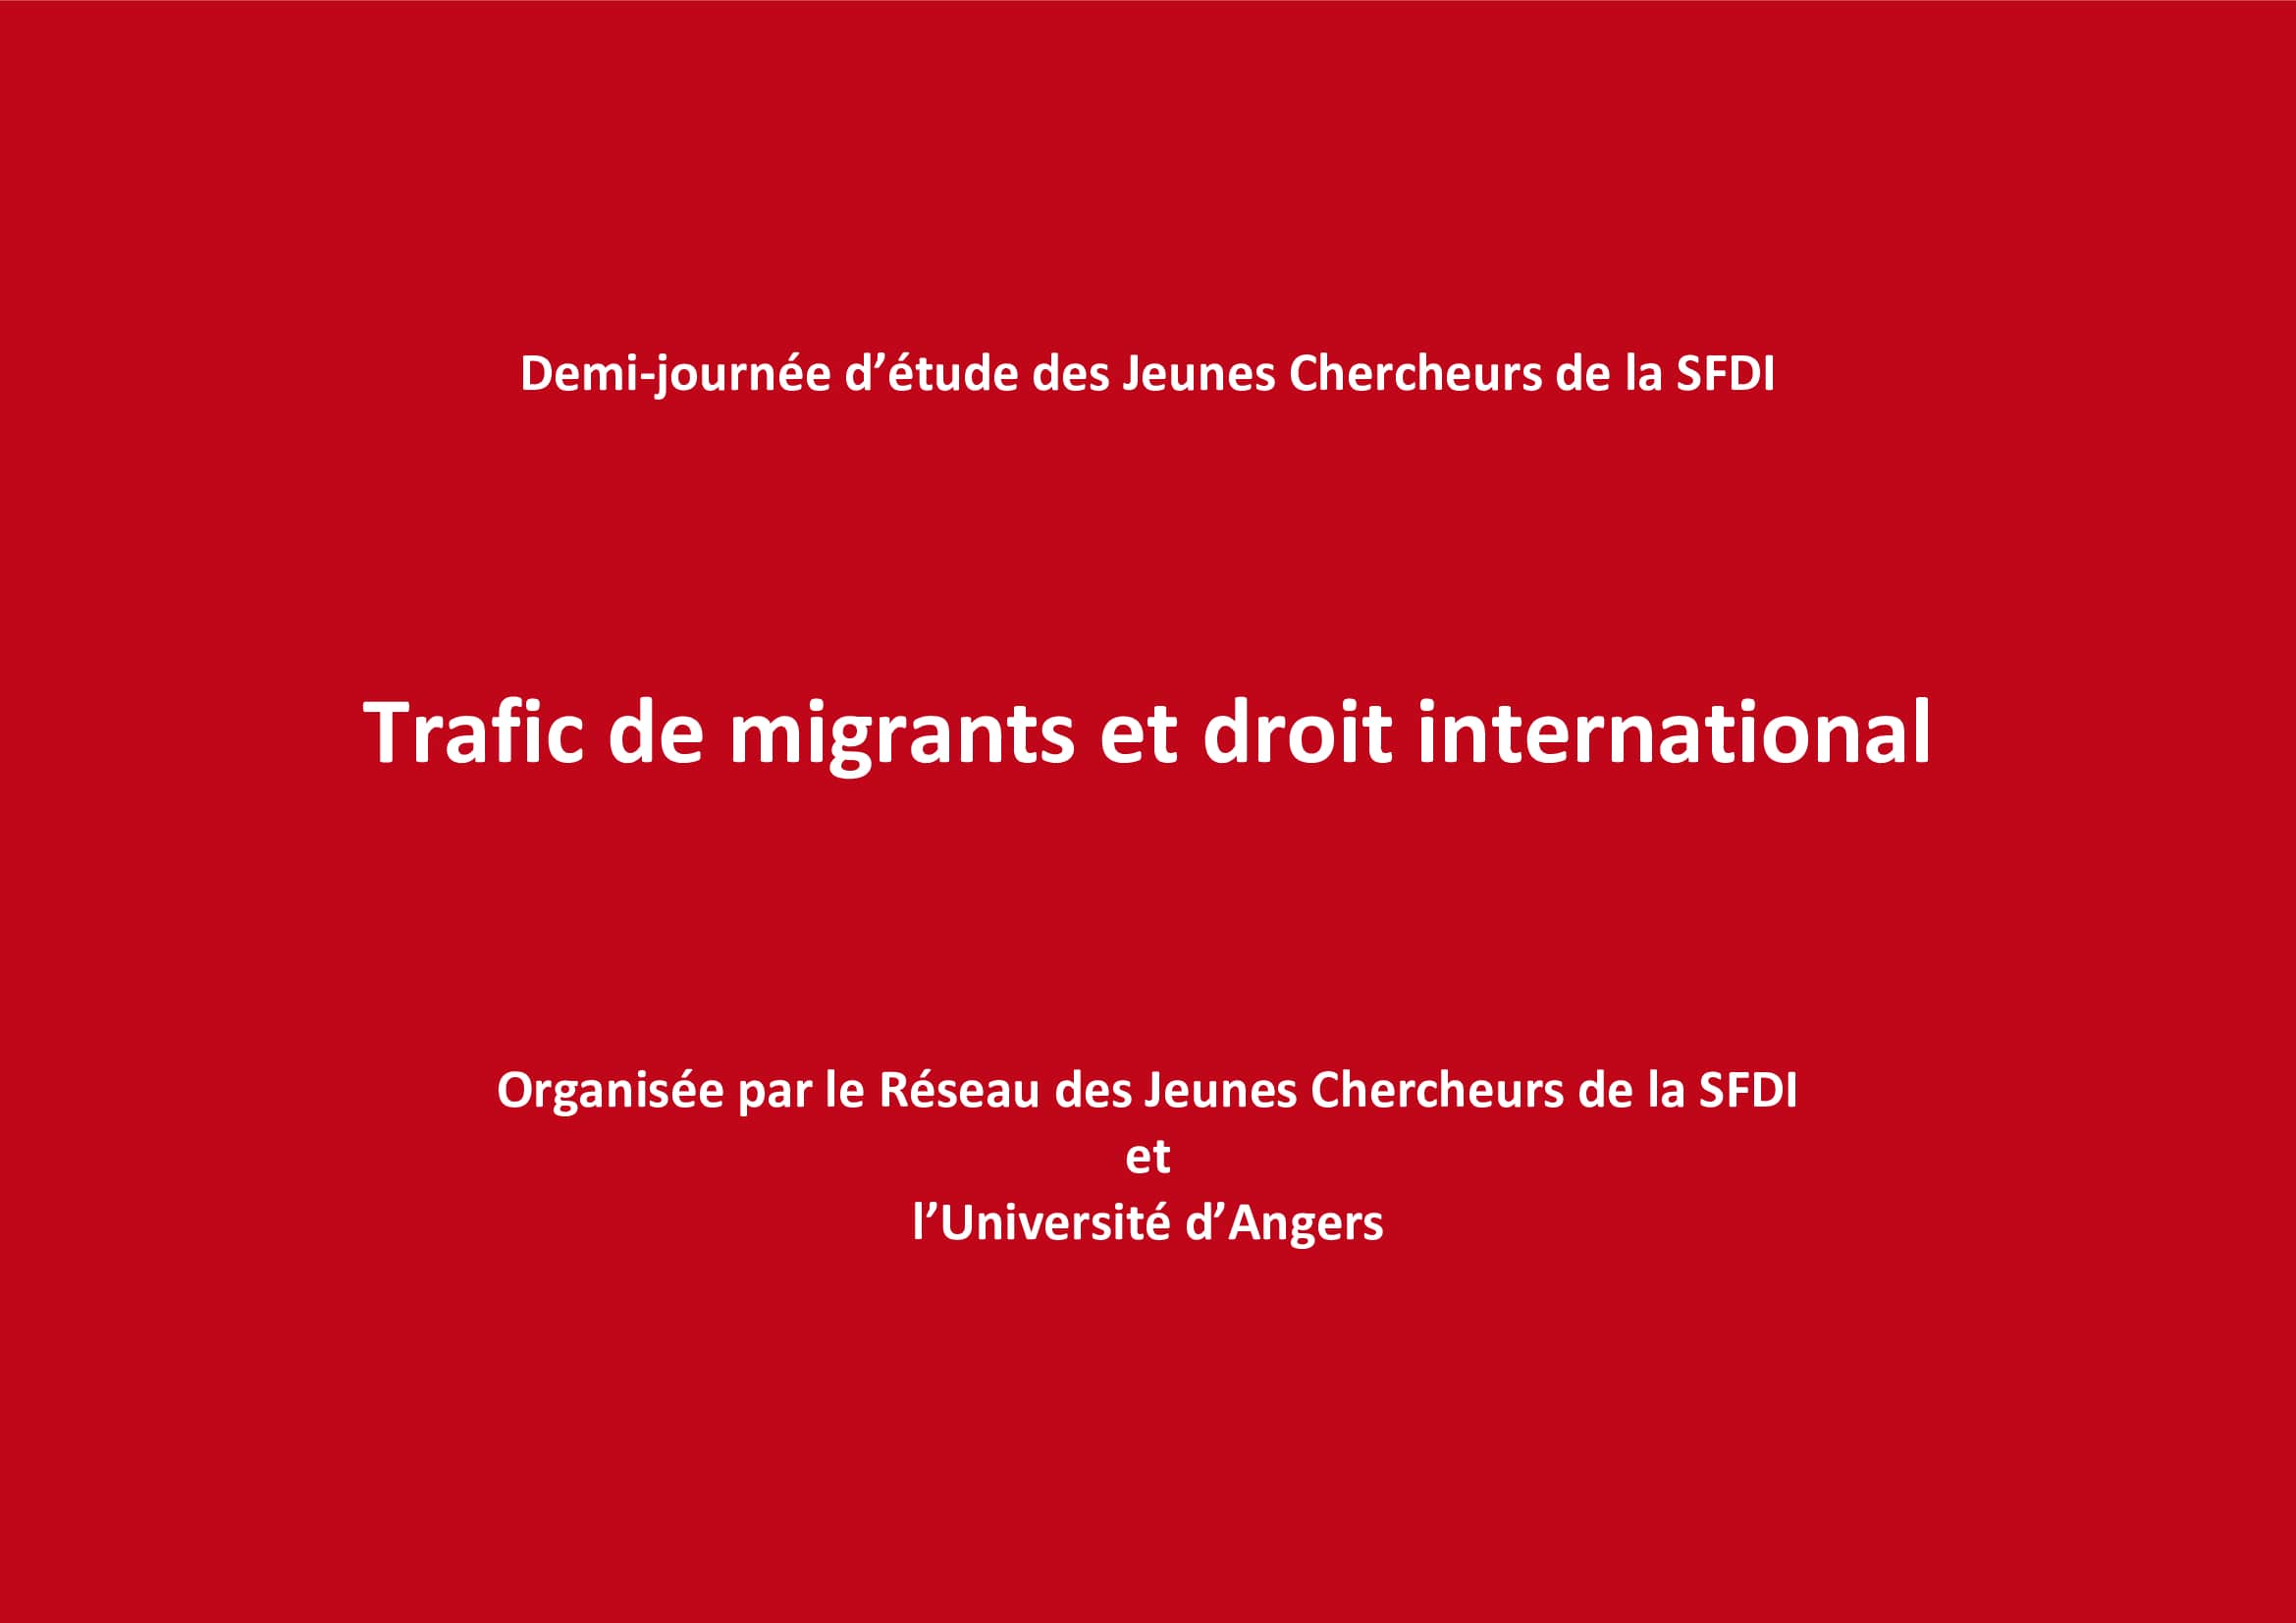 L’apport des résolutions du Conseil de sécurité à la répression du trafic de migrants par voie maritime, par A. Grymaneli